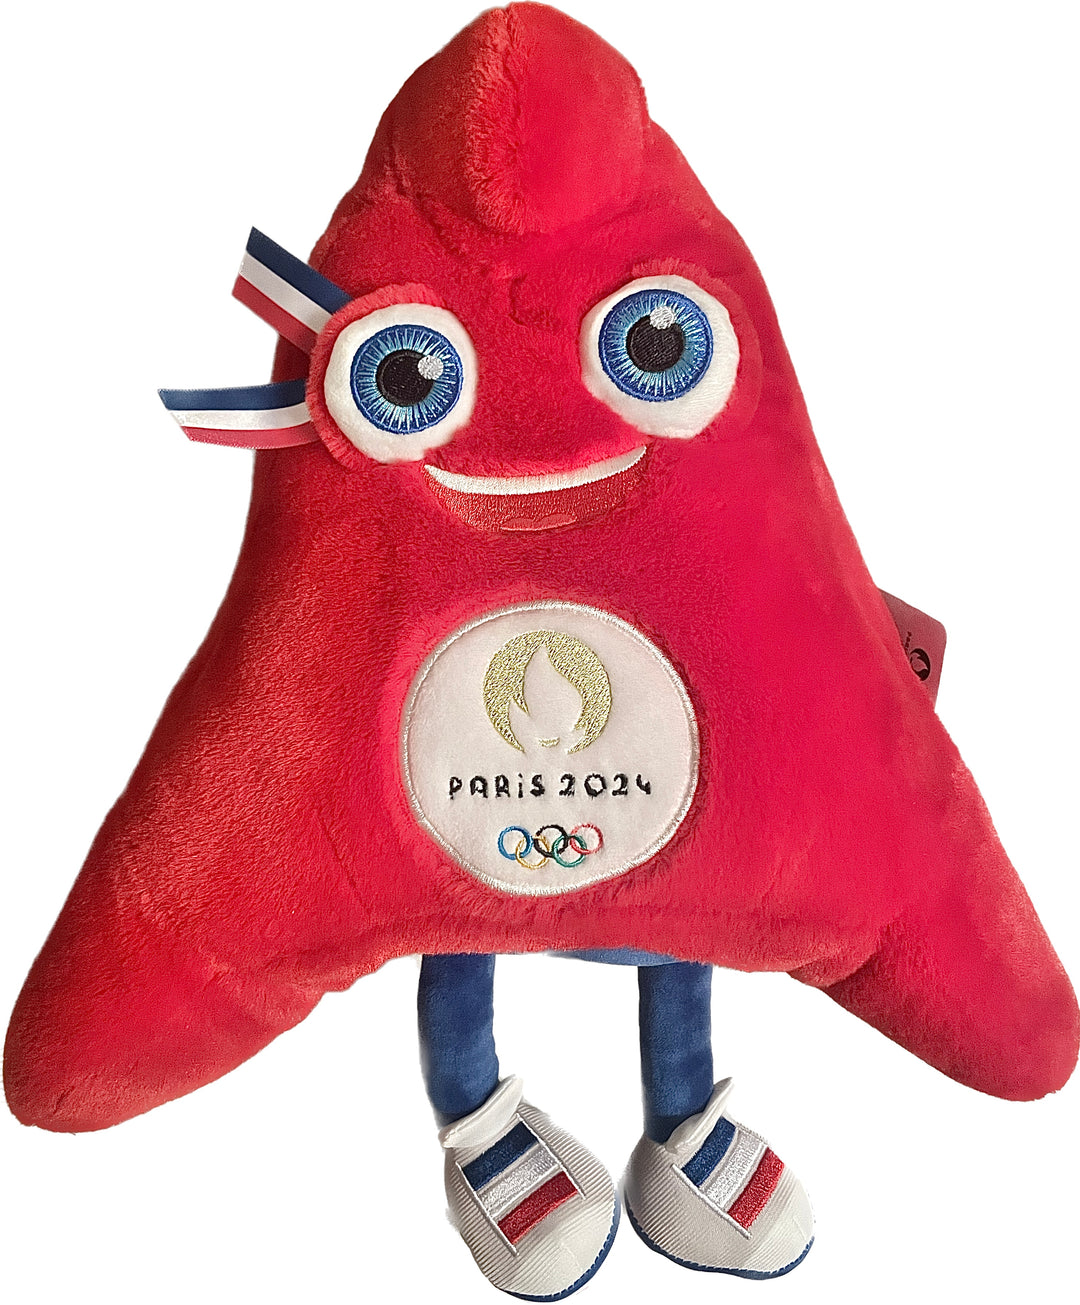 Peluche de la mascotte officielle des Jeux Olympiques Paris 2024, colorée et amusante.